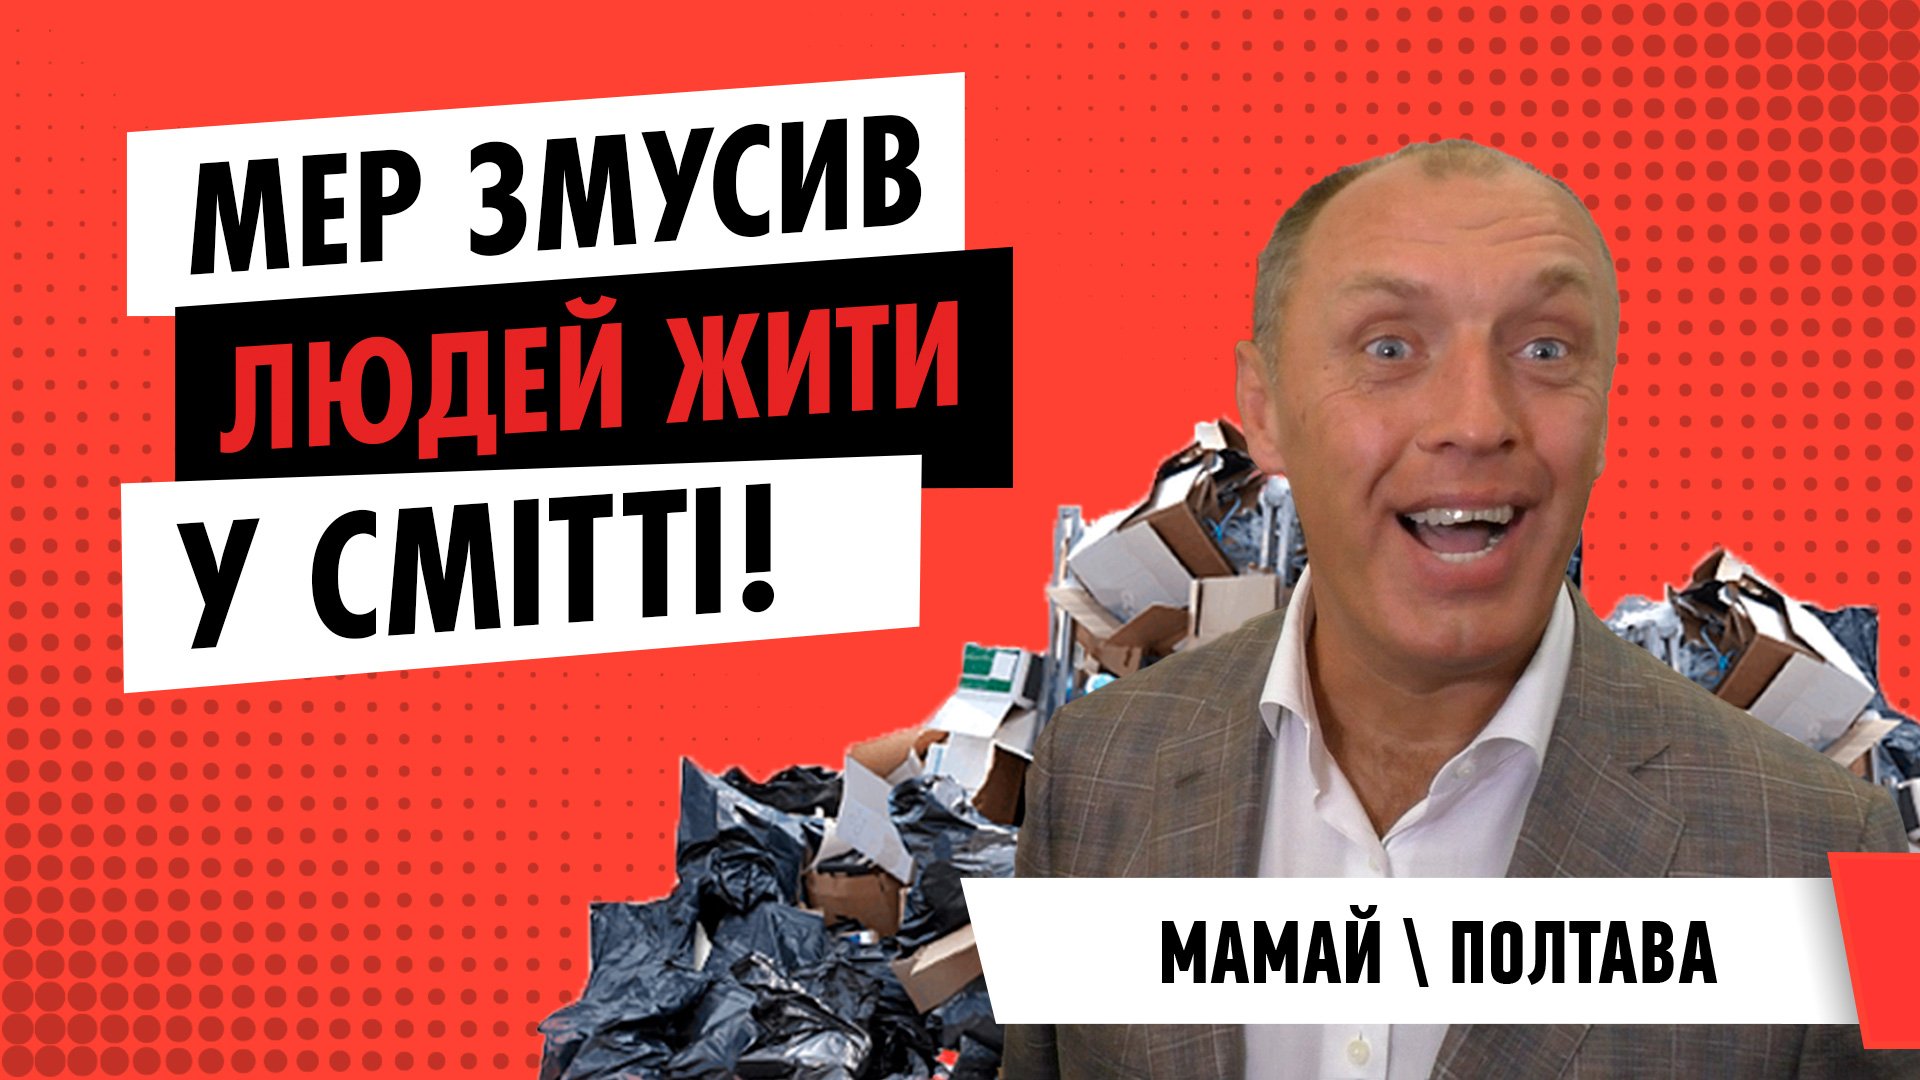 Мер Олександр Мамай змусив полтавців жити у смітті | ЦЕНТР